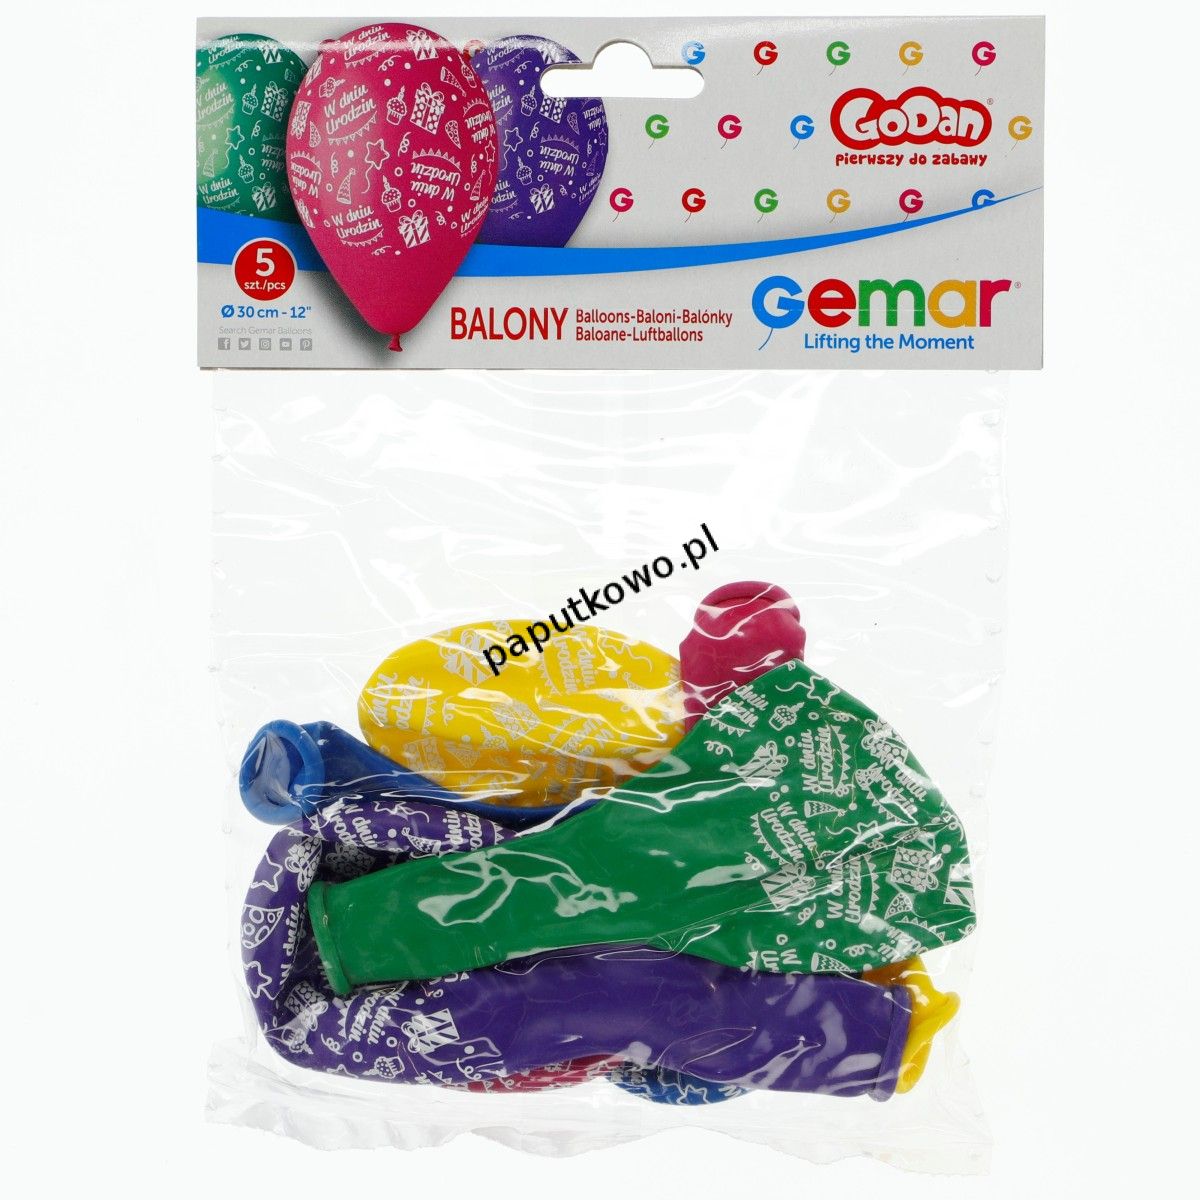 Balon gumowy Godan premium dniu urodzin op 5 szt (GS110/pwdu) 1